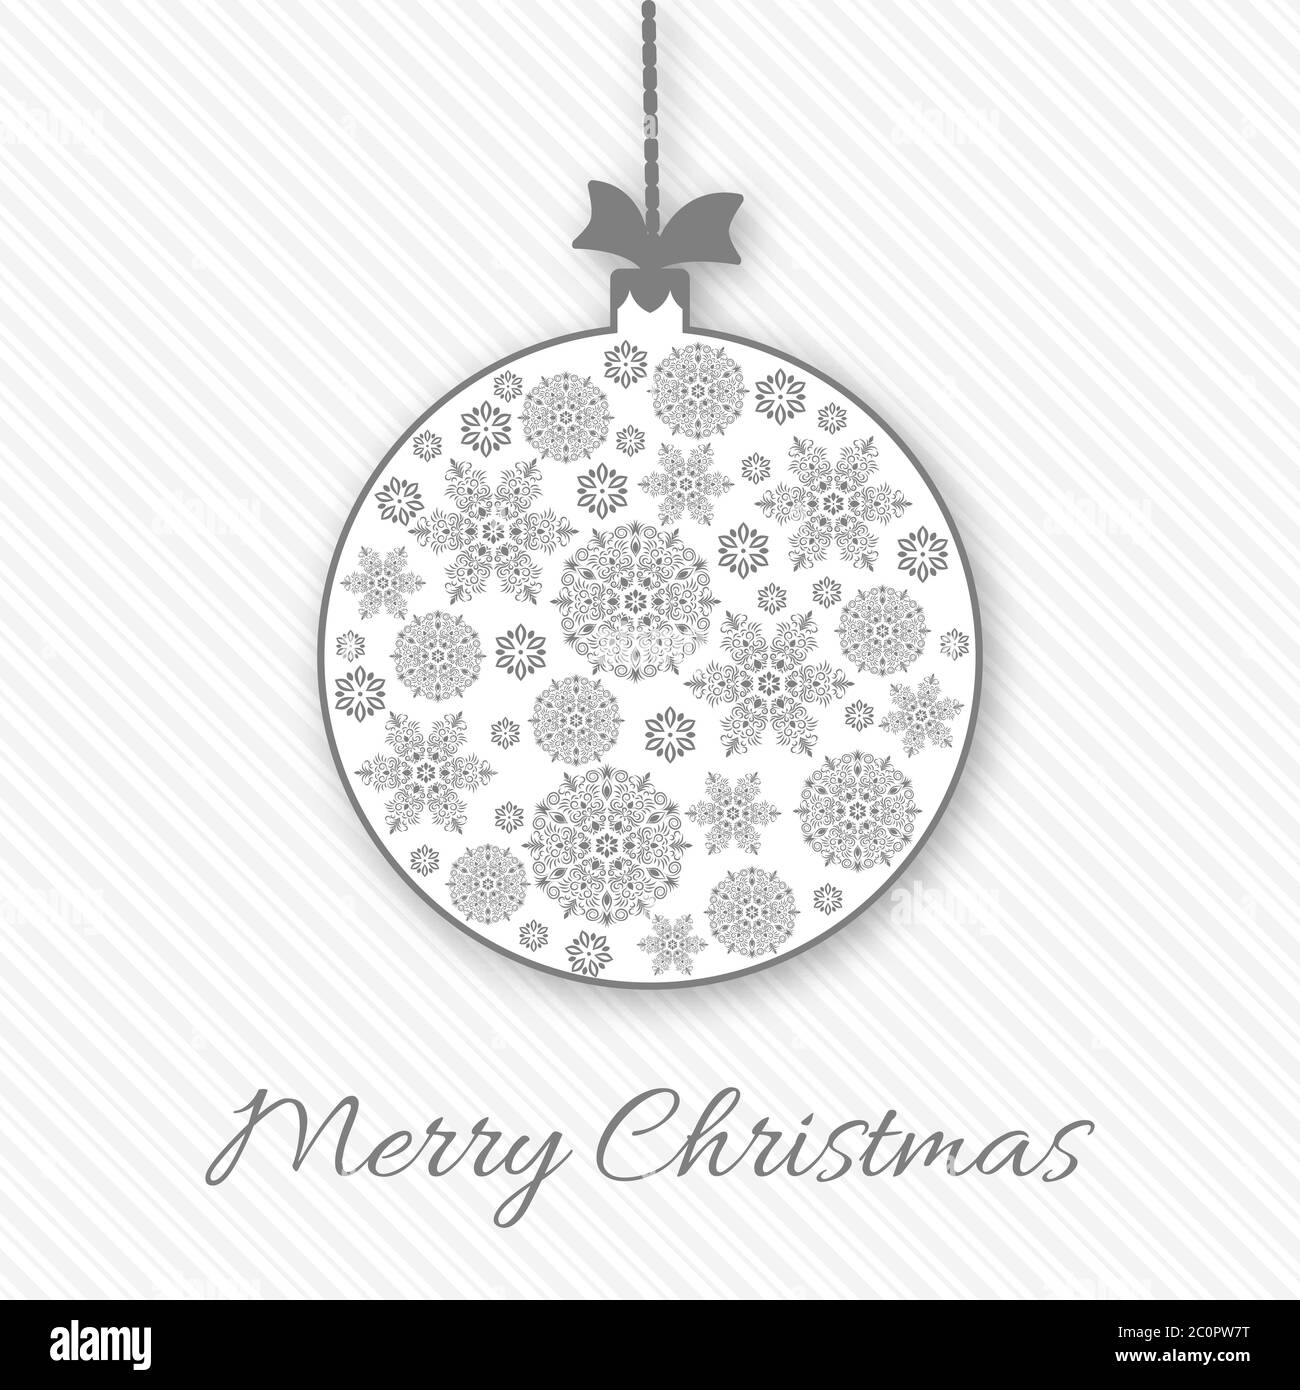 Weihnachten und Neujahr Gruß, Einladungskarte mit weihnachts Schneeflocke Ball. Weiß und grau, Vintage dekorativen Stil. Vektorgrafik. Stock Vektor